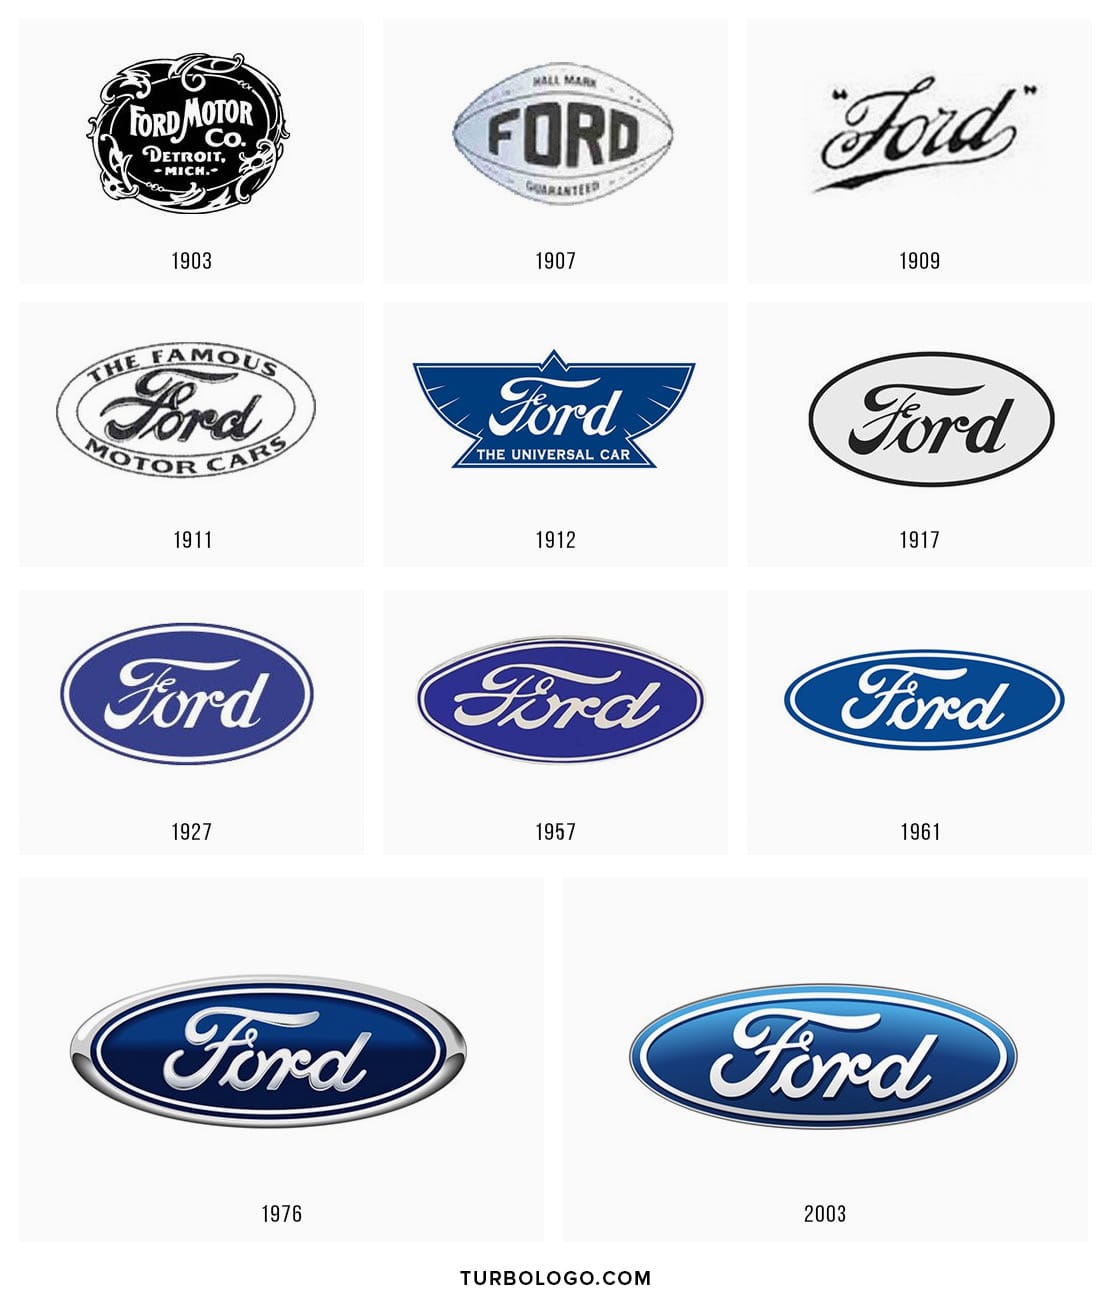 Histoire du logo Ford